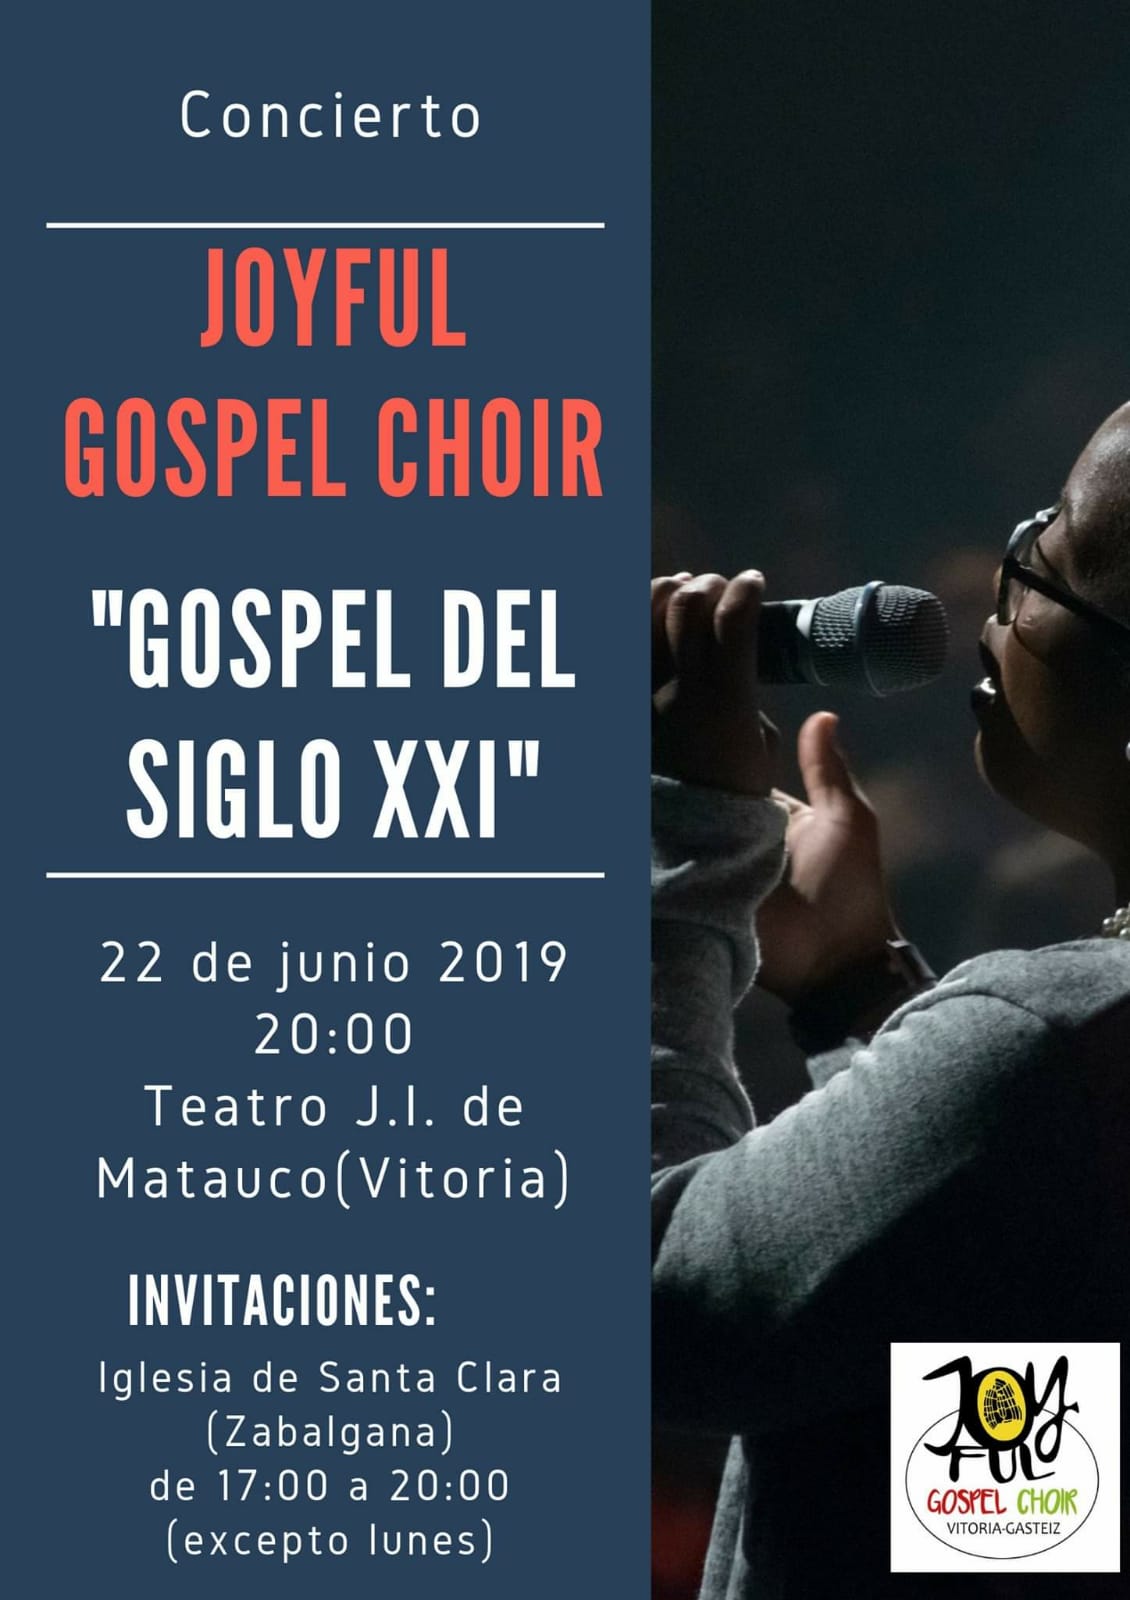 Concierto benéfico Joyful Gospel Choir de Vitoria-Gasteiz , sábado 22 de junio a las 20.00h. 🎶